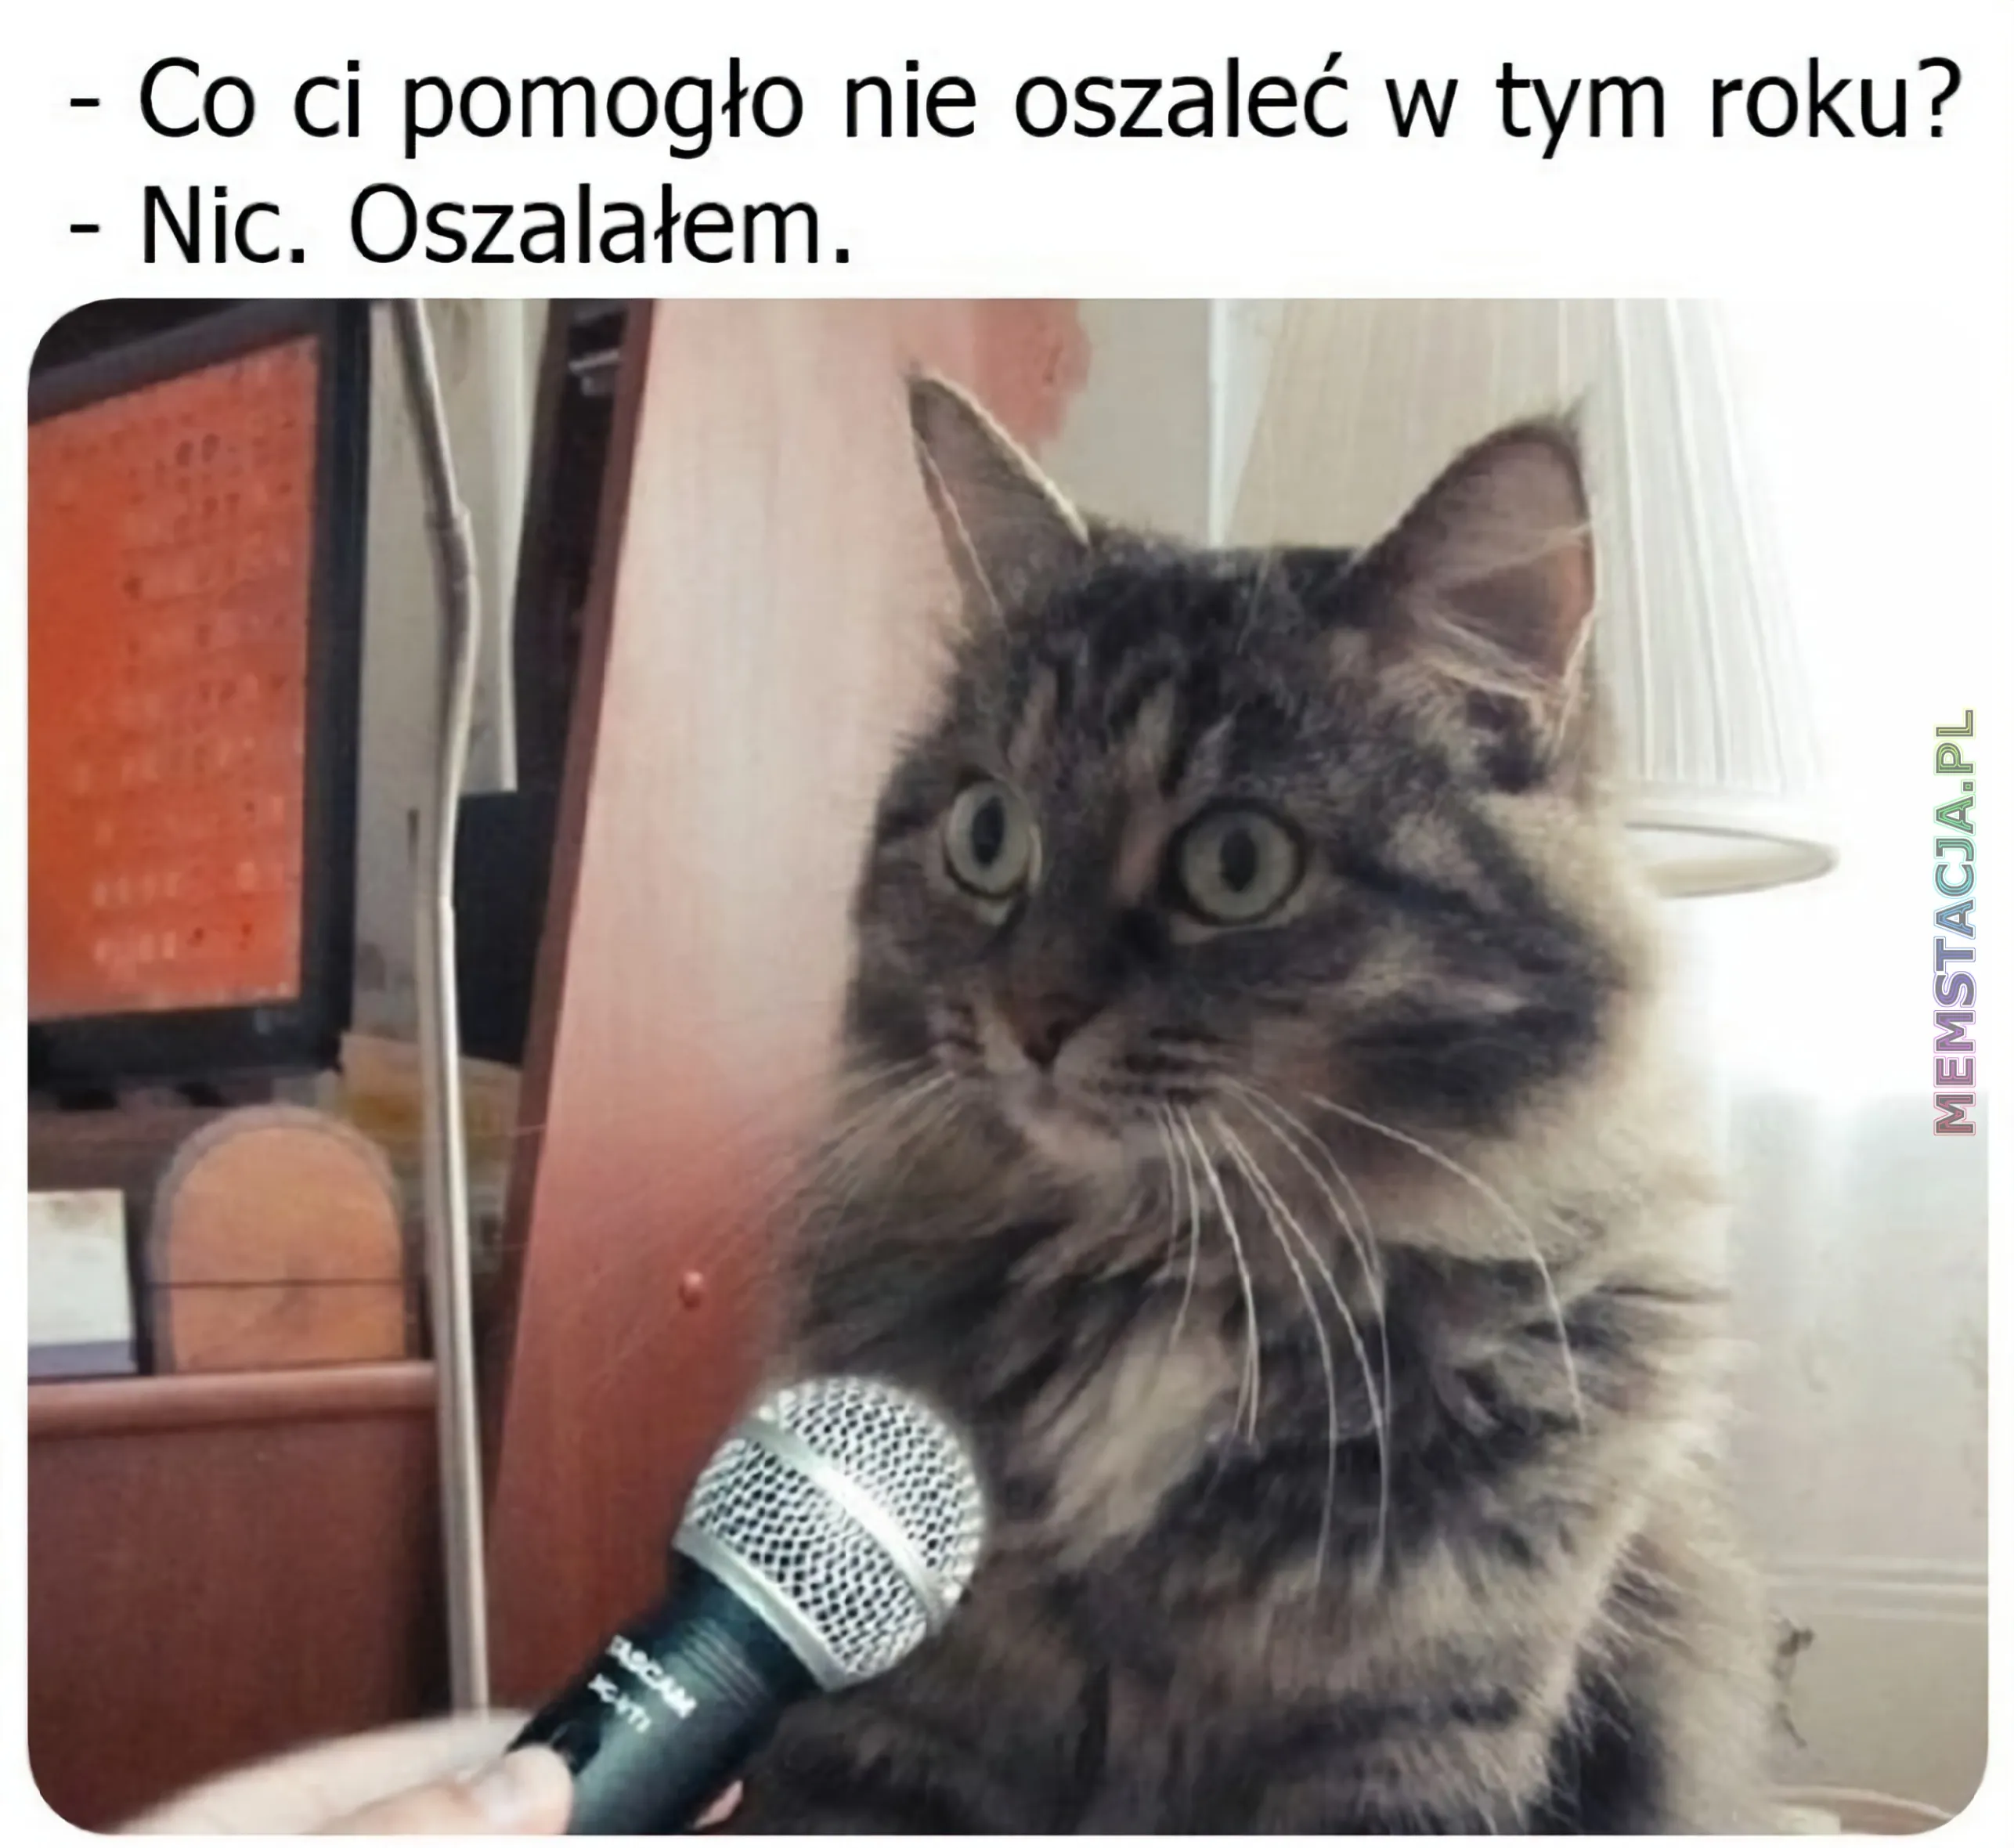 Mem przedstawiający postać kota odpowiadającego do mikrofonu: '- Co ci pomogło nie oszaleć w tym roku?', '- Nic. Oszalałem'